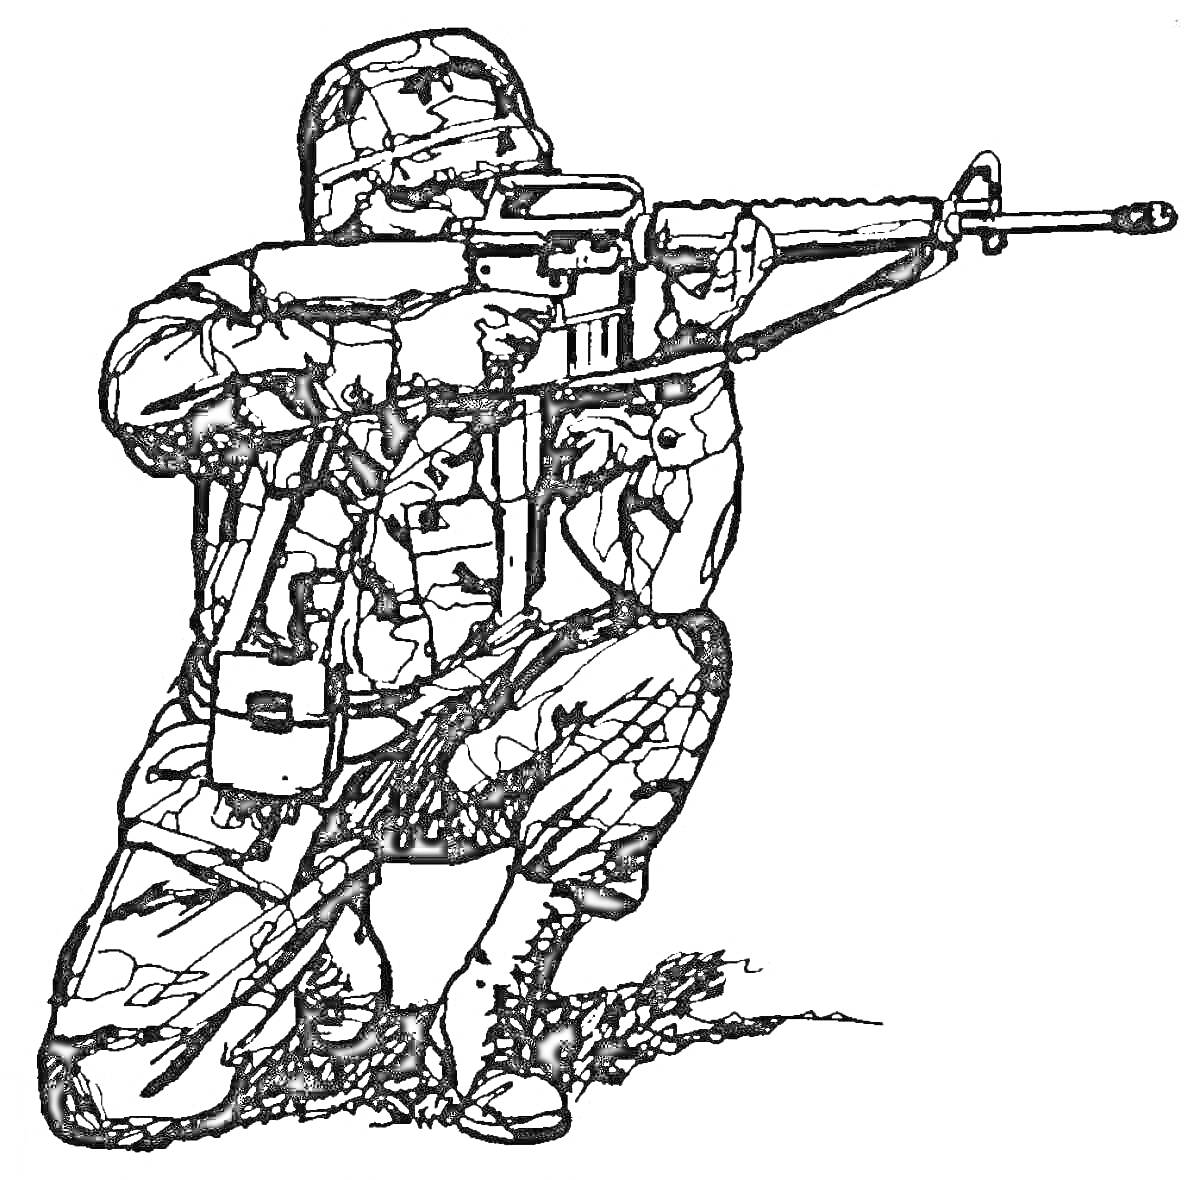 Снайпер в спецназе, на коленях, в шлеме с камуфляжем, с винтовкой в руках